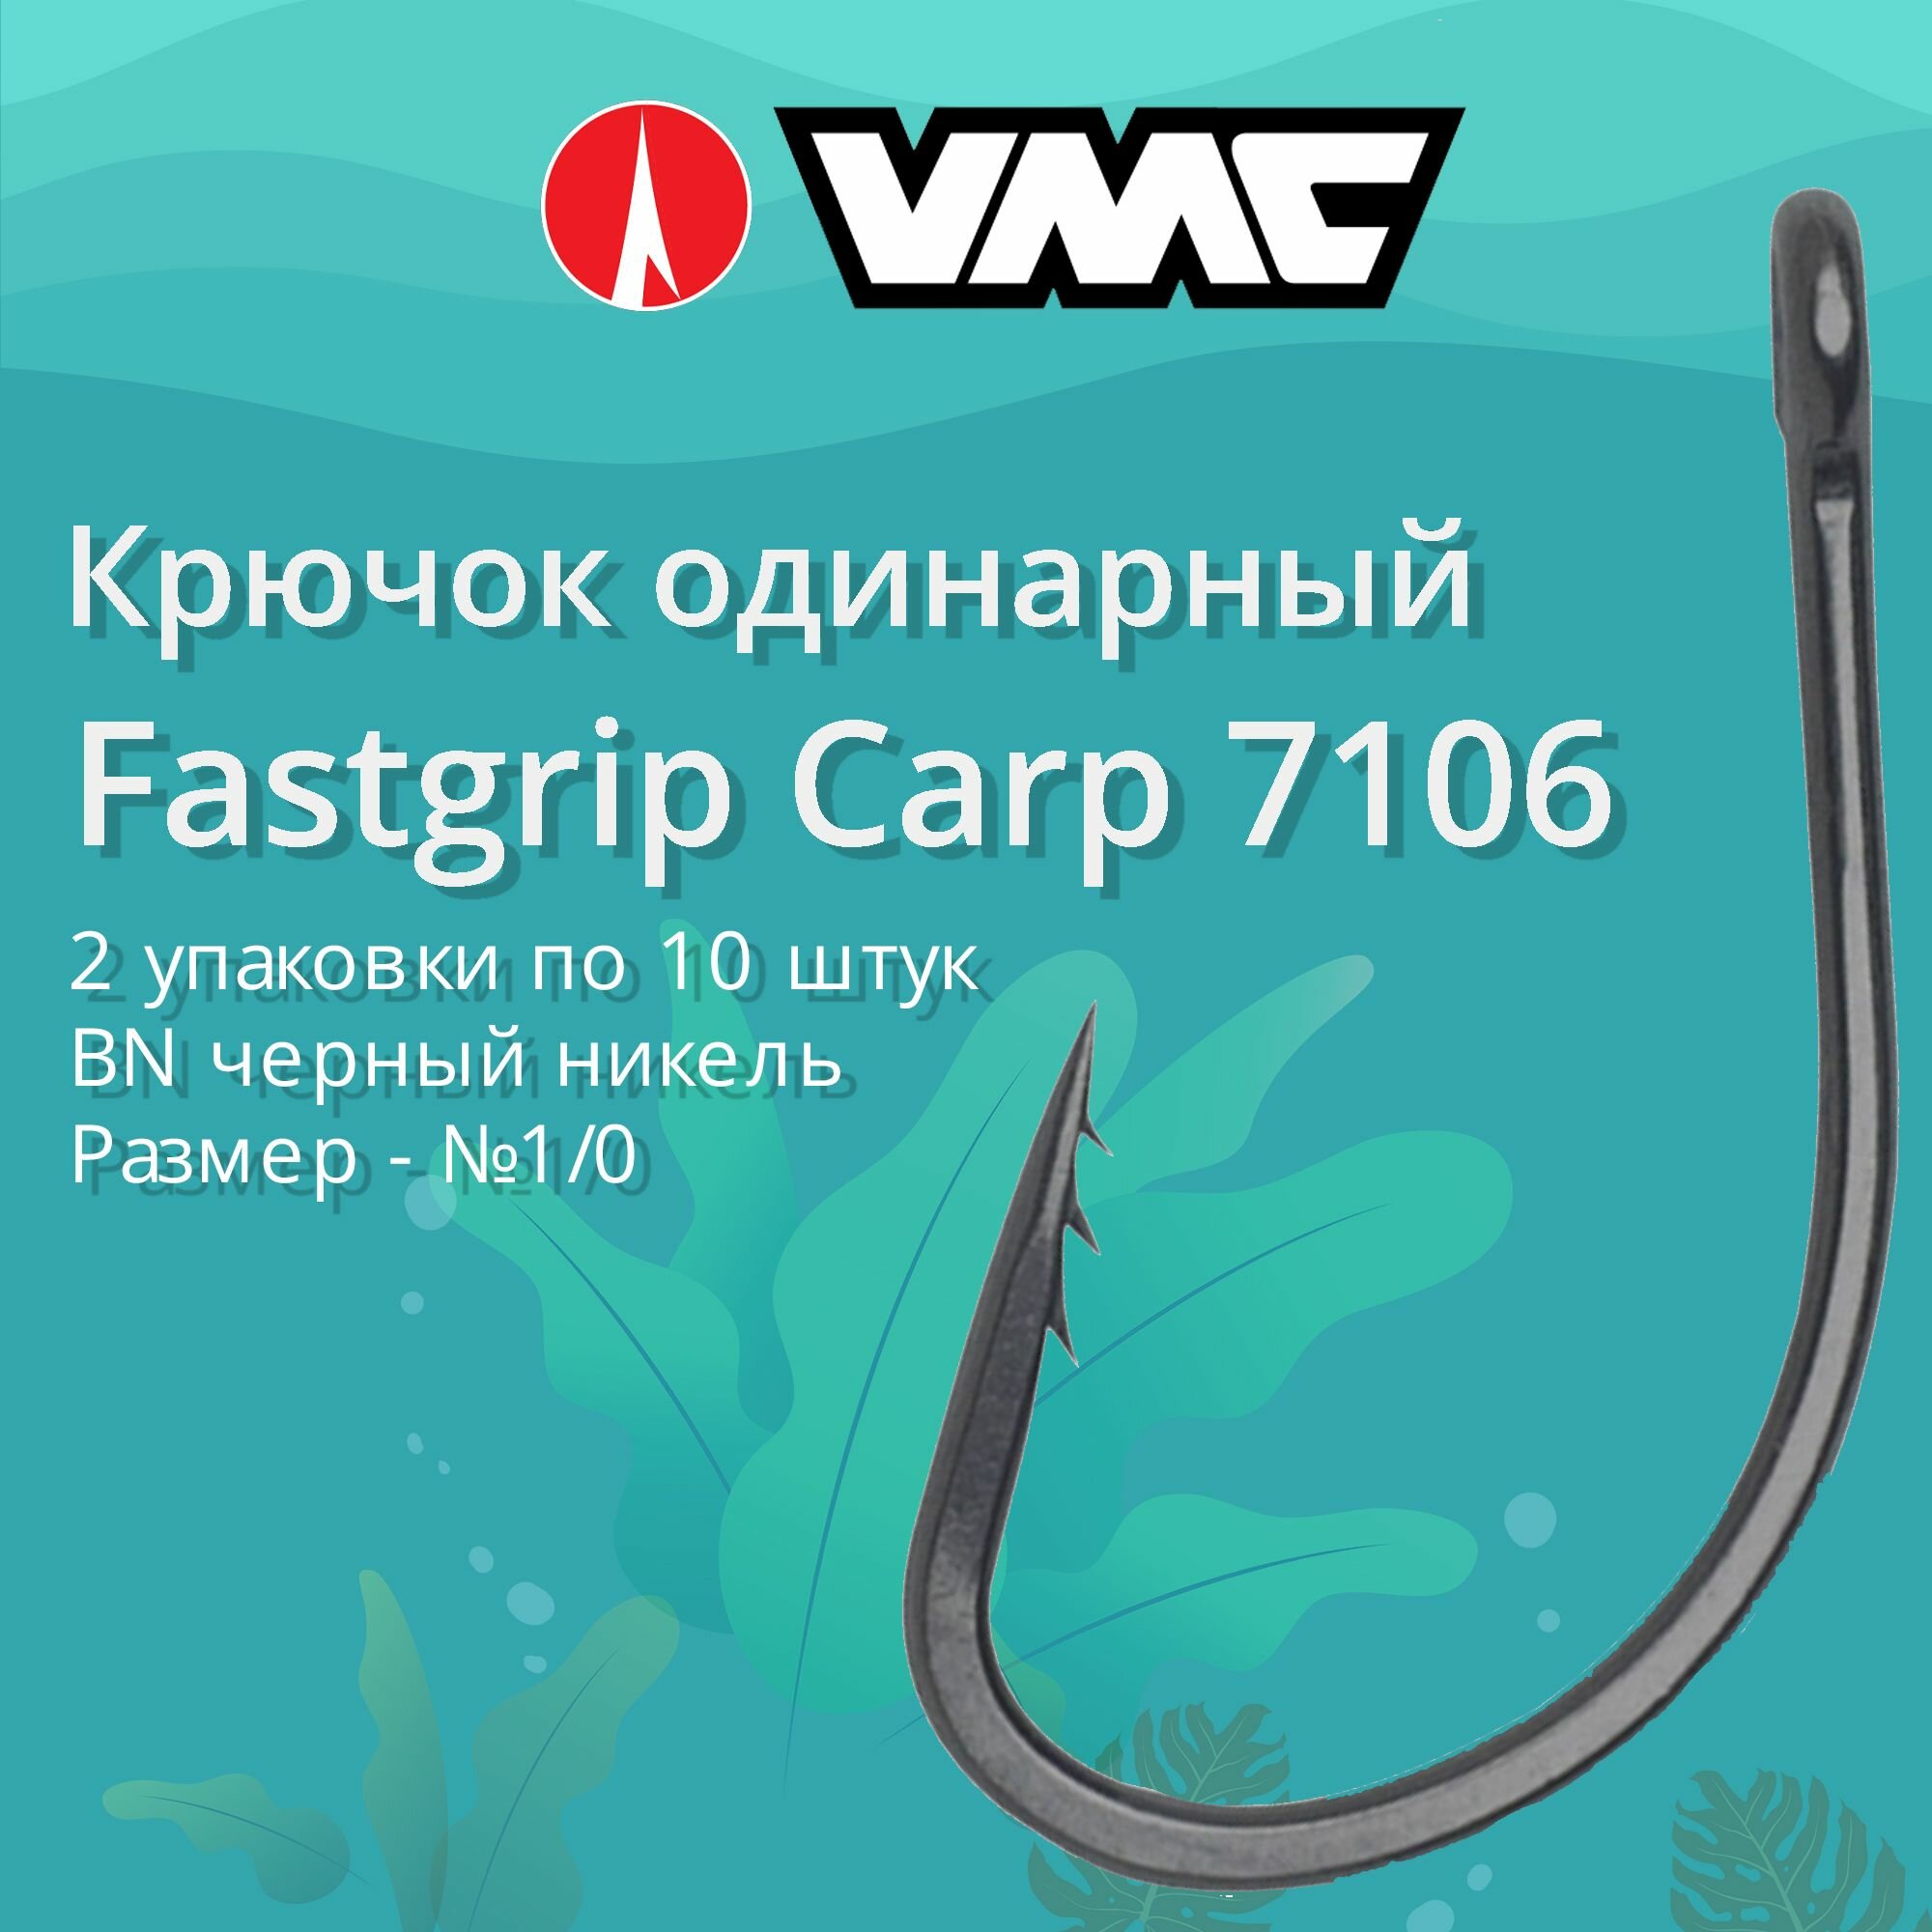 Крючки для рыбалки (одинарный) VMC Fastgrip Carp 7106 BN (черн. никель) №1/0, 2 упаковки по 10 штук